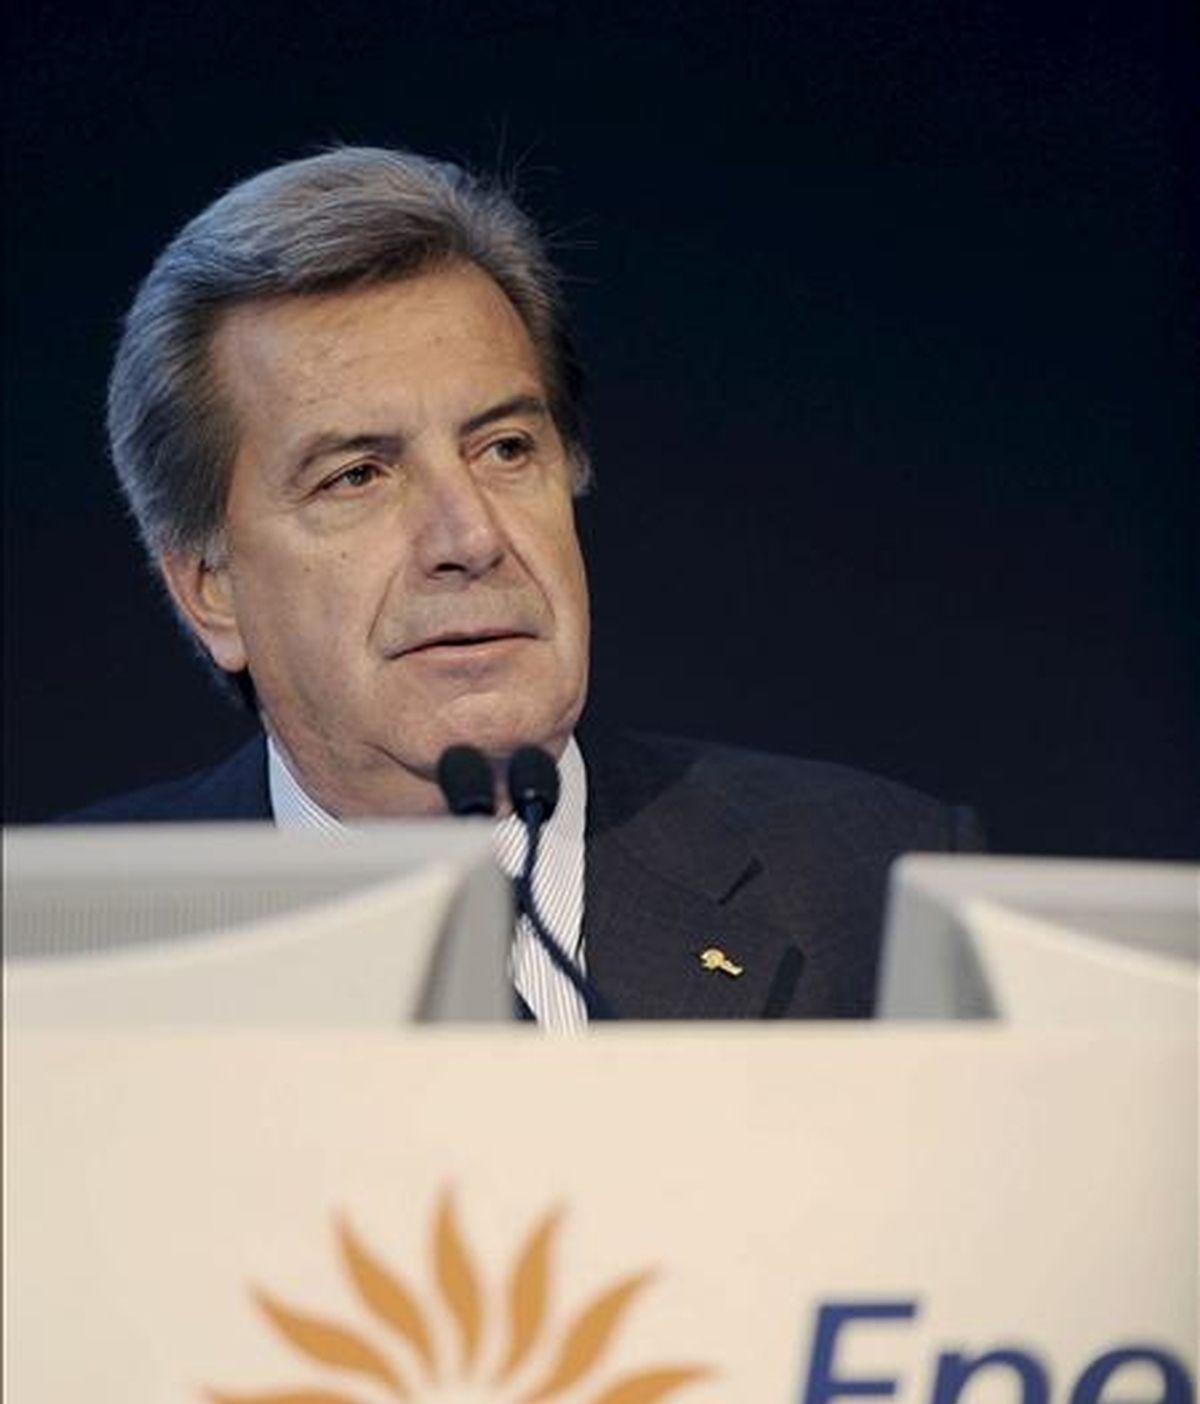 El consejero delegado de Enel, Fulvio Conti, durante la presentación de resultados en 2008 de la eléctrica italiana, principal accionista de Endesa, y su plan estratégico para el periodo 2009-2013. EFE/Archivo